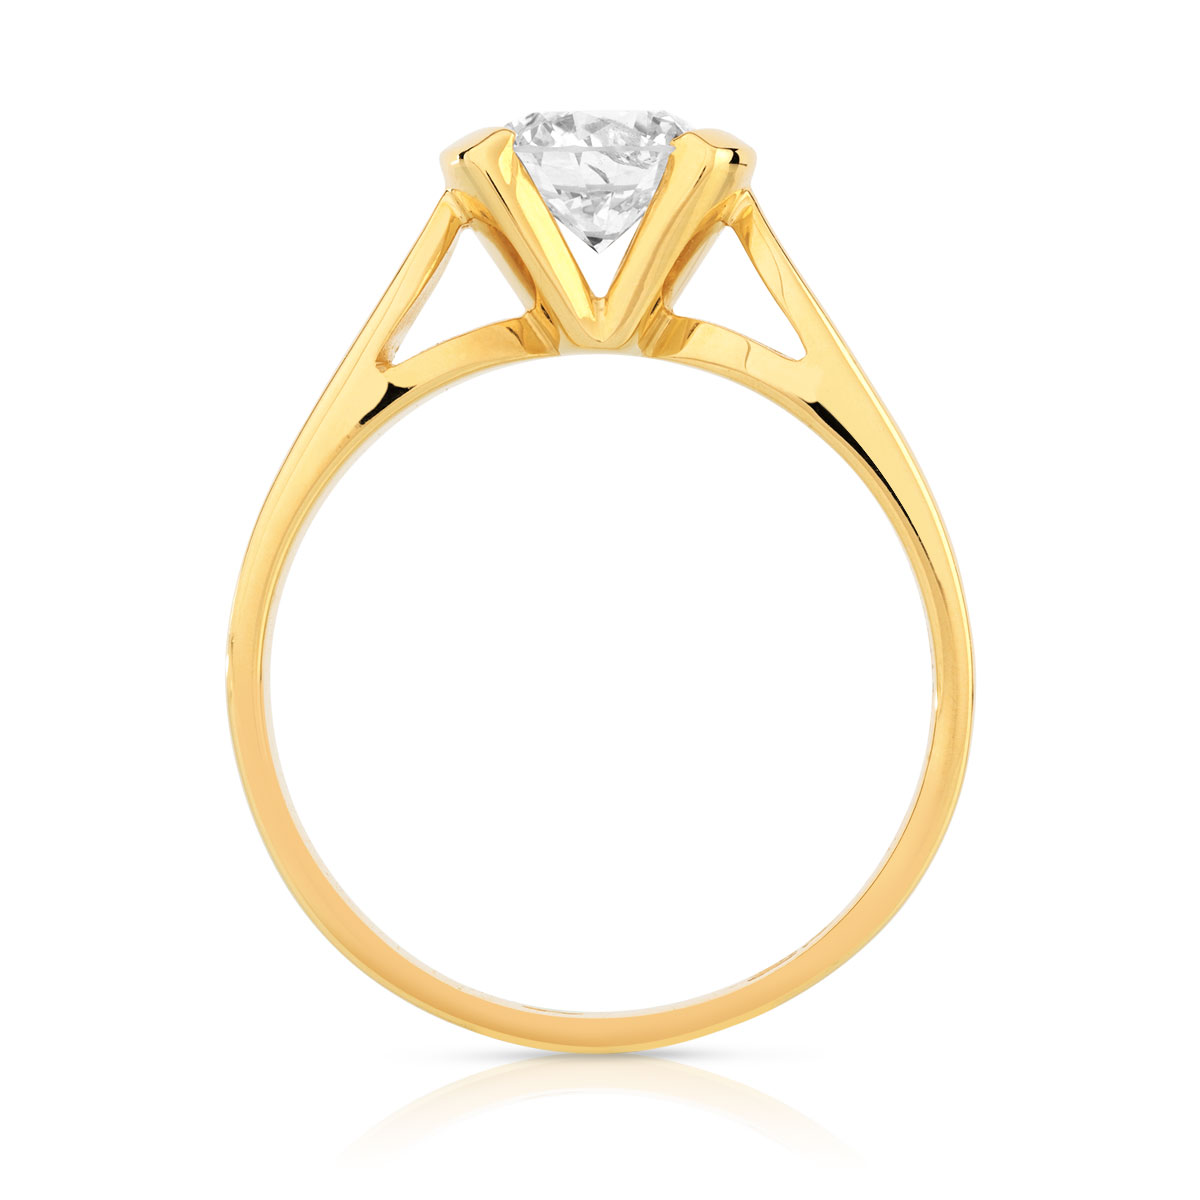 Bague solitaire or 750 jaune diamant synthétique 0.70 carat - vue 2